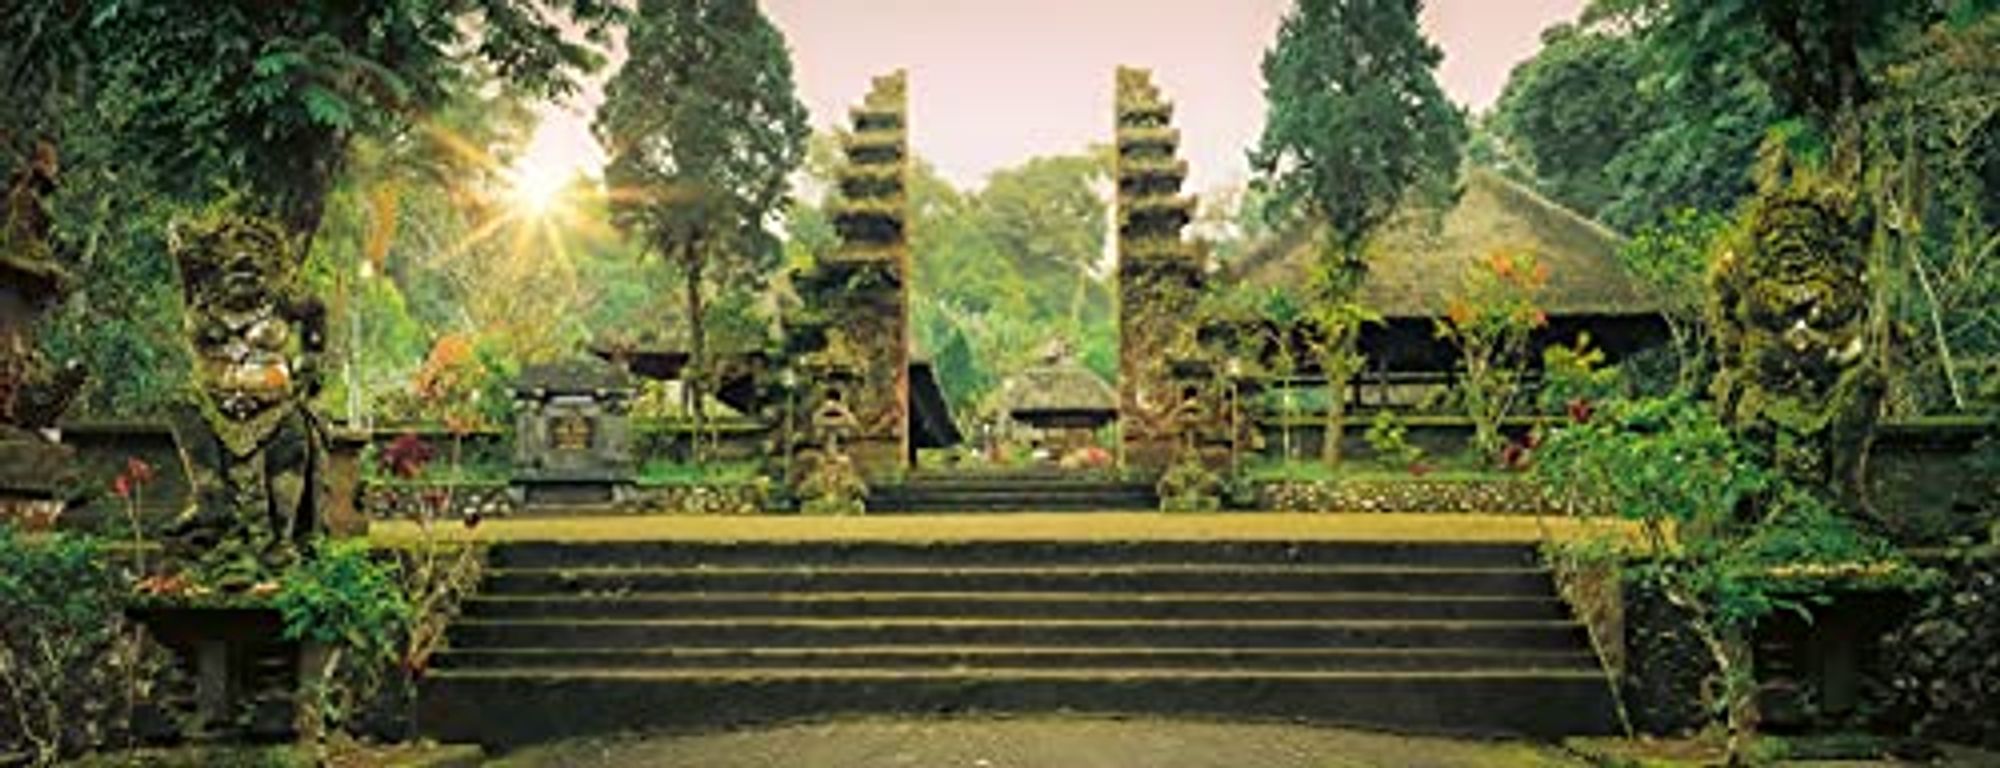 Jungle Tempel Pura Luhur Batukaru, Bali